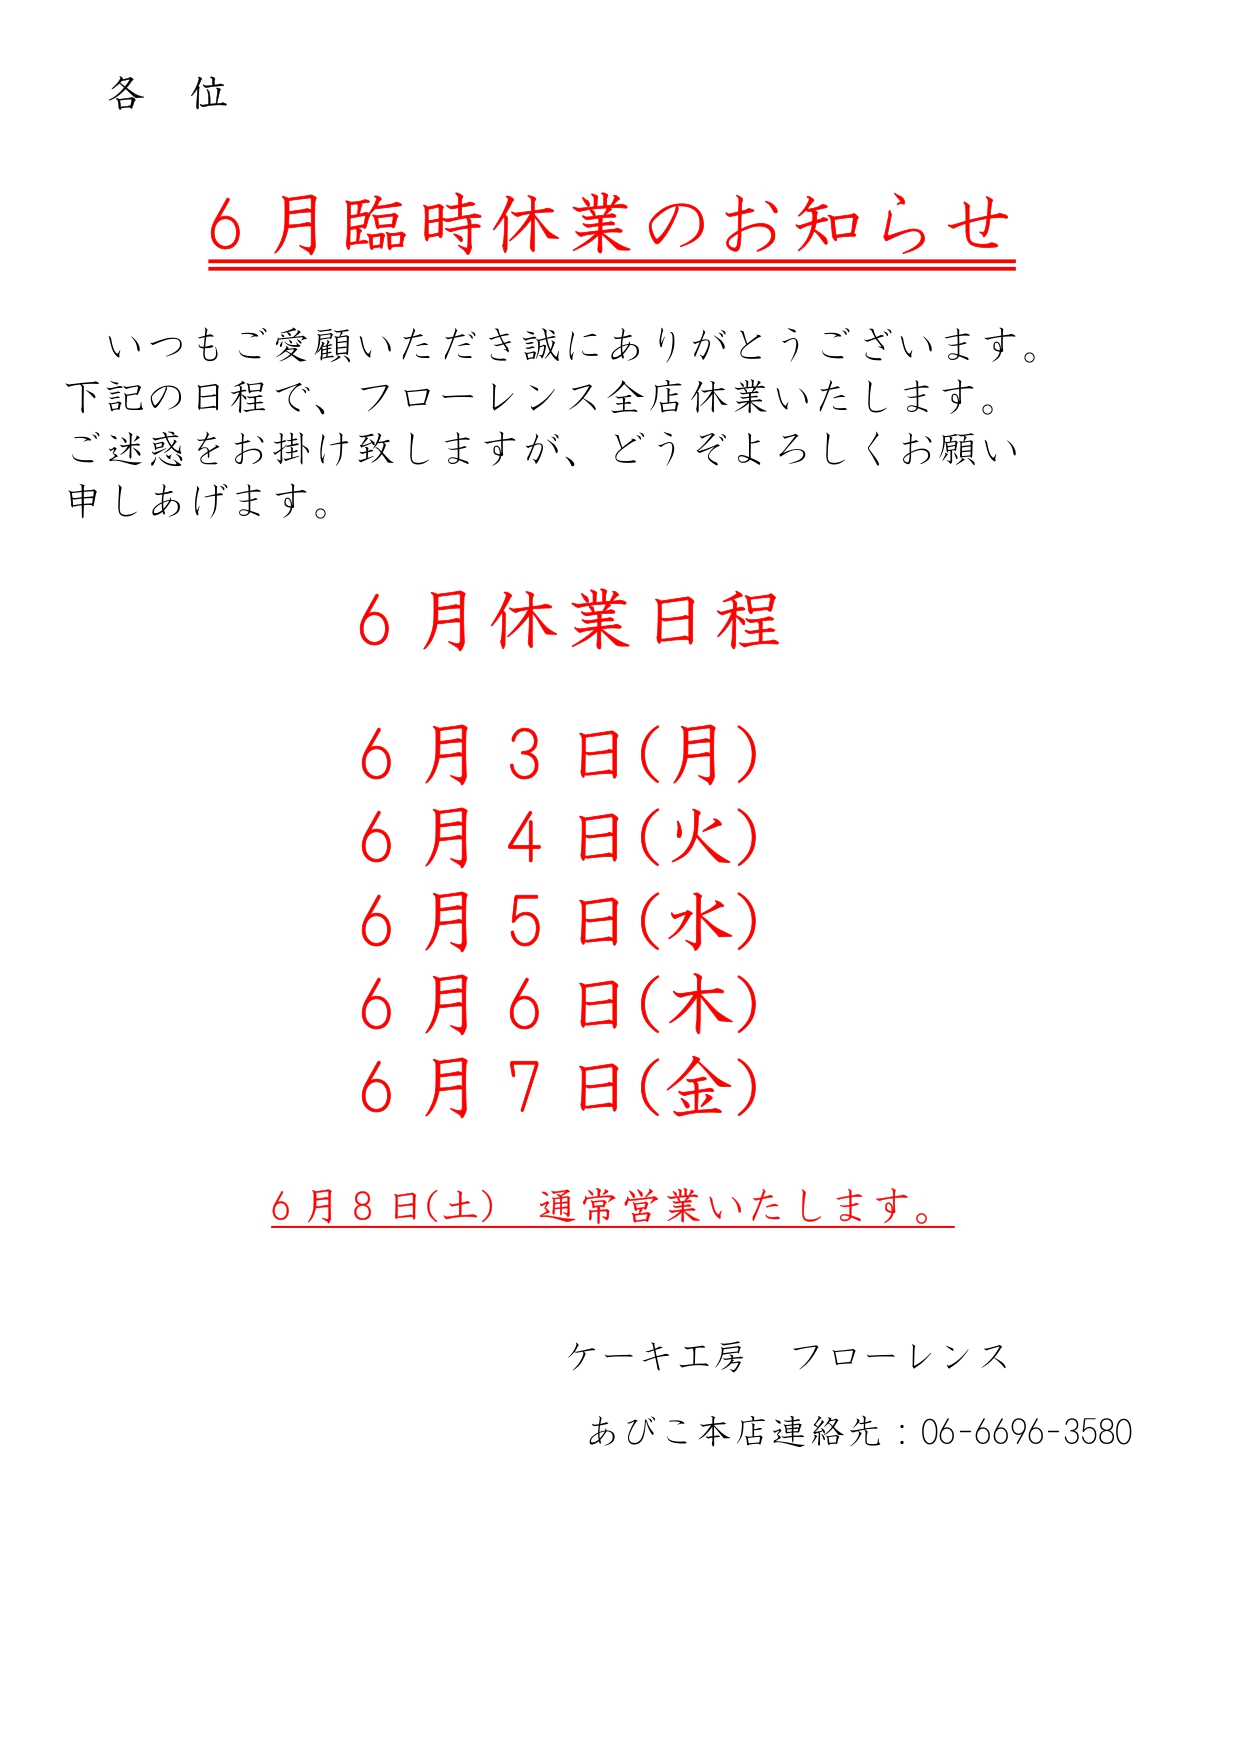 全店臨時休業のお知らせ 6/3(月)-6/7(金)